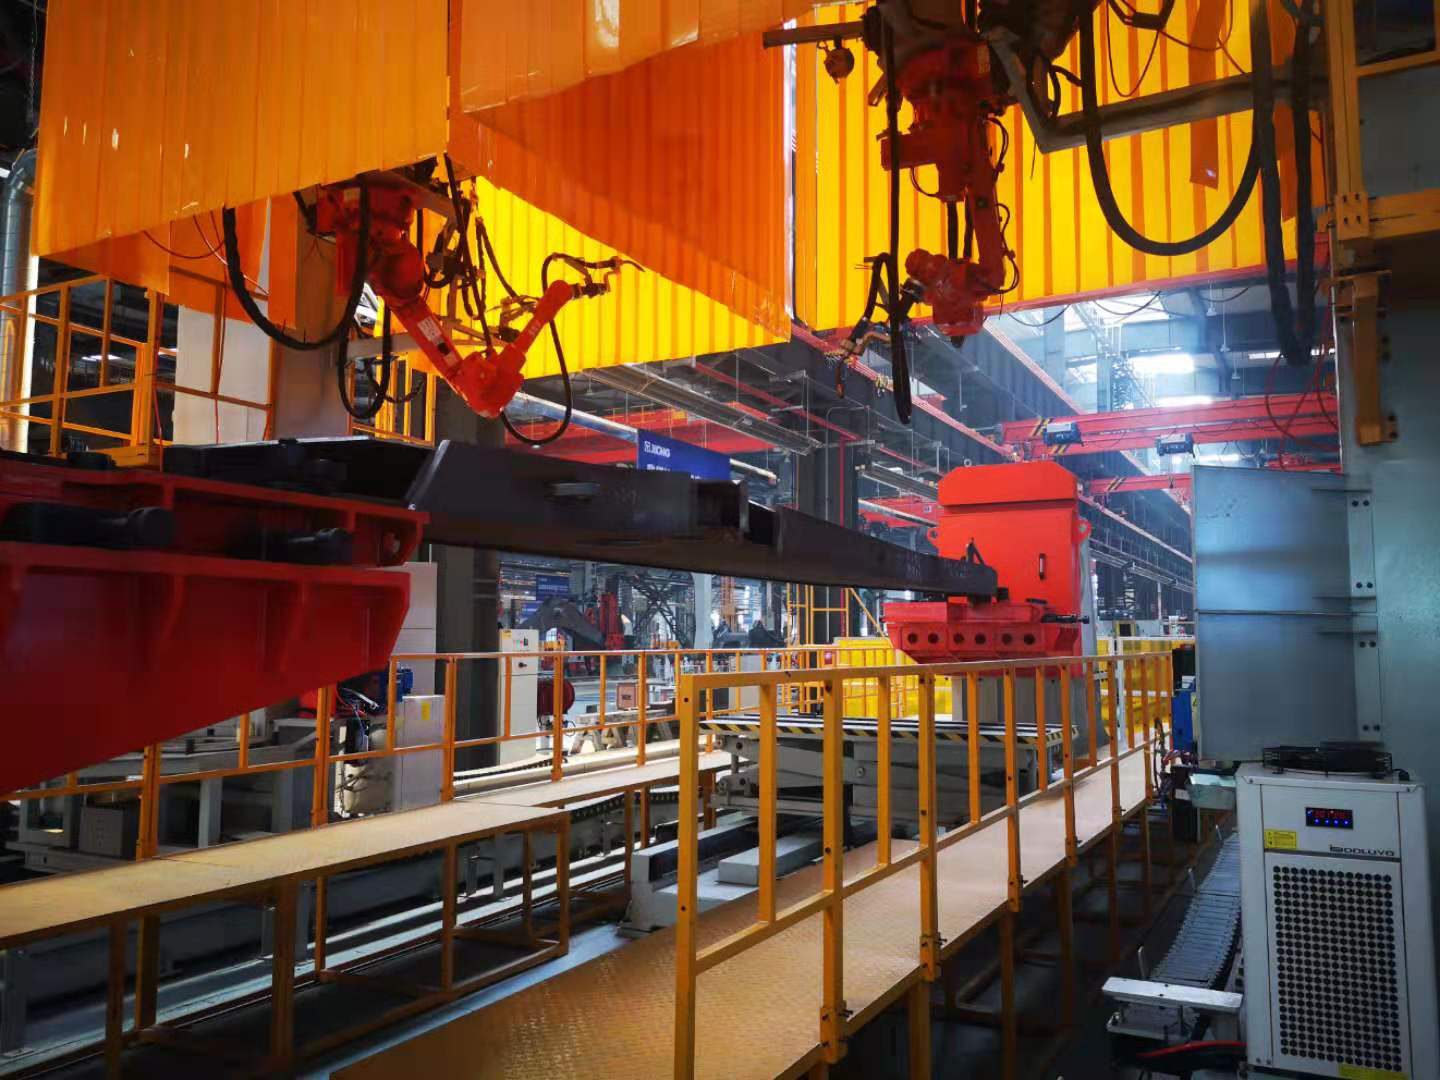 17噸級焊接機器人工作站